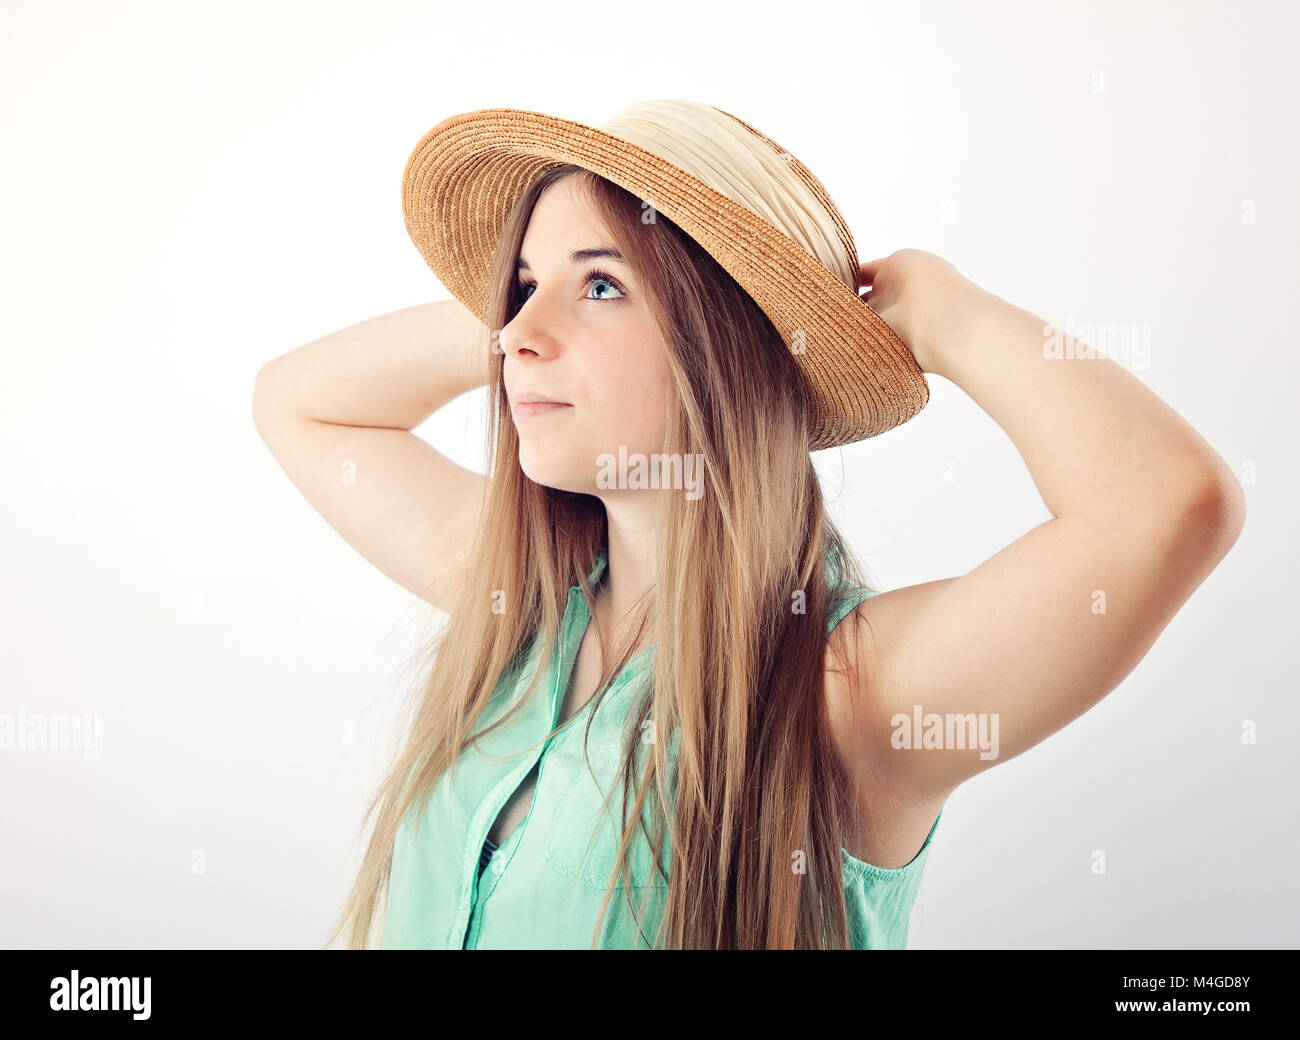 teenage girl wearing sun hat Stock Photo